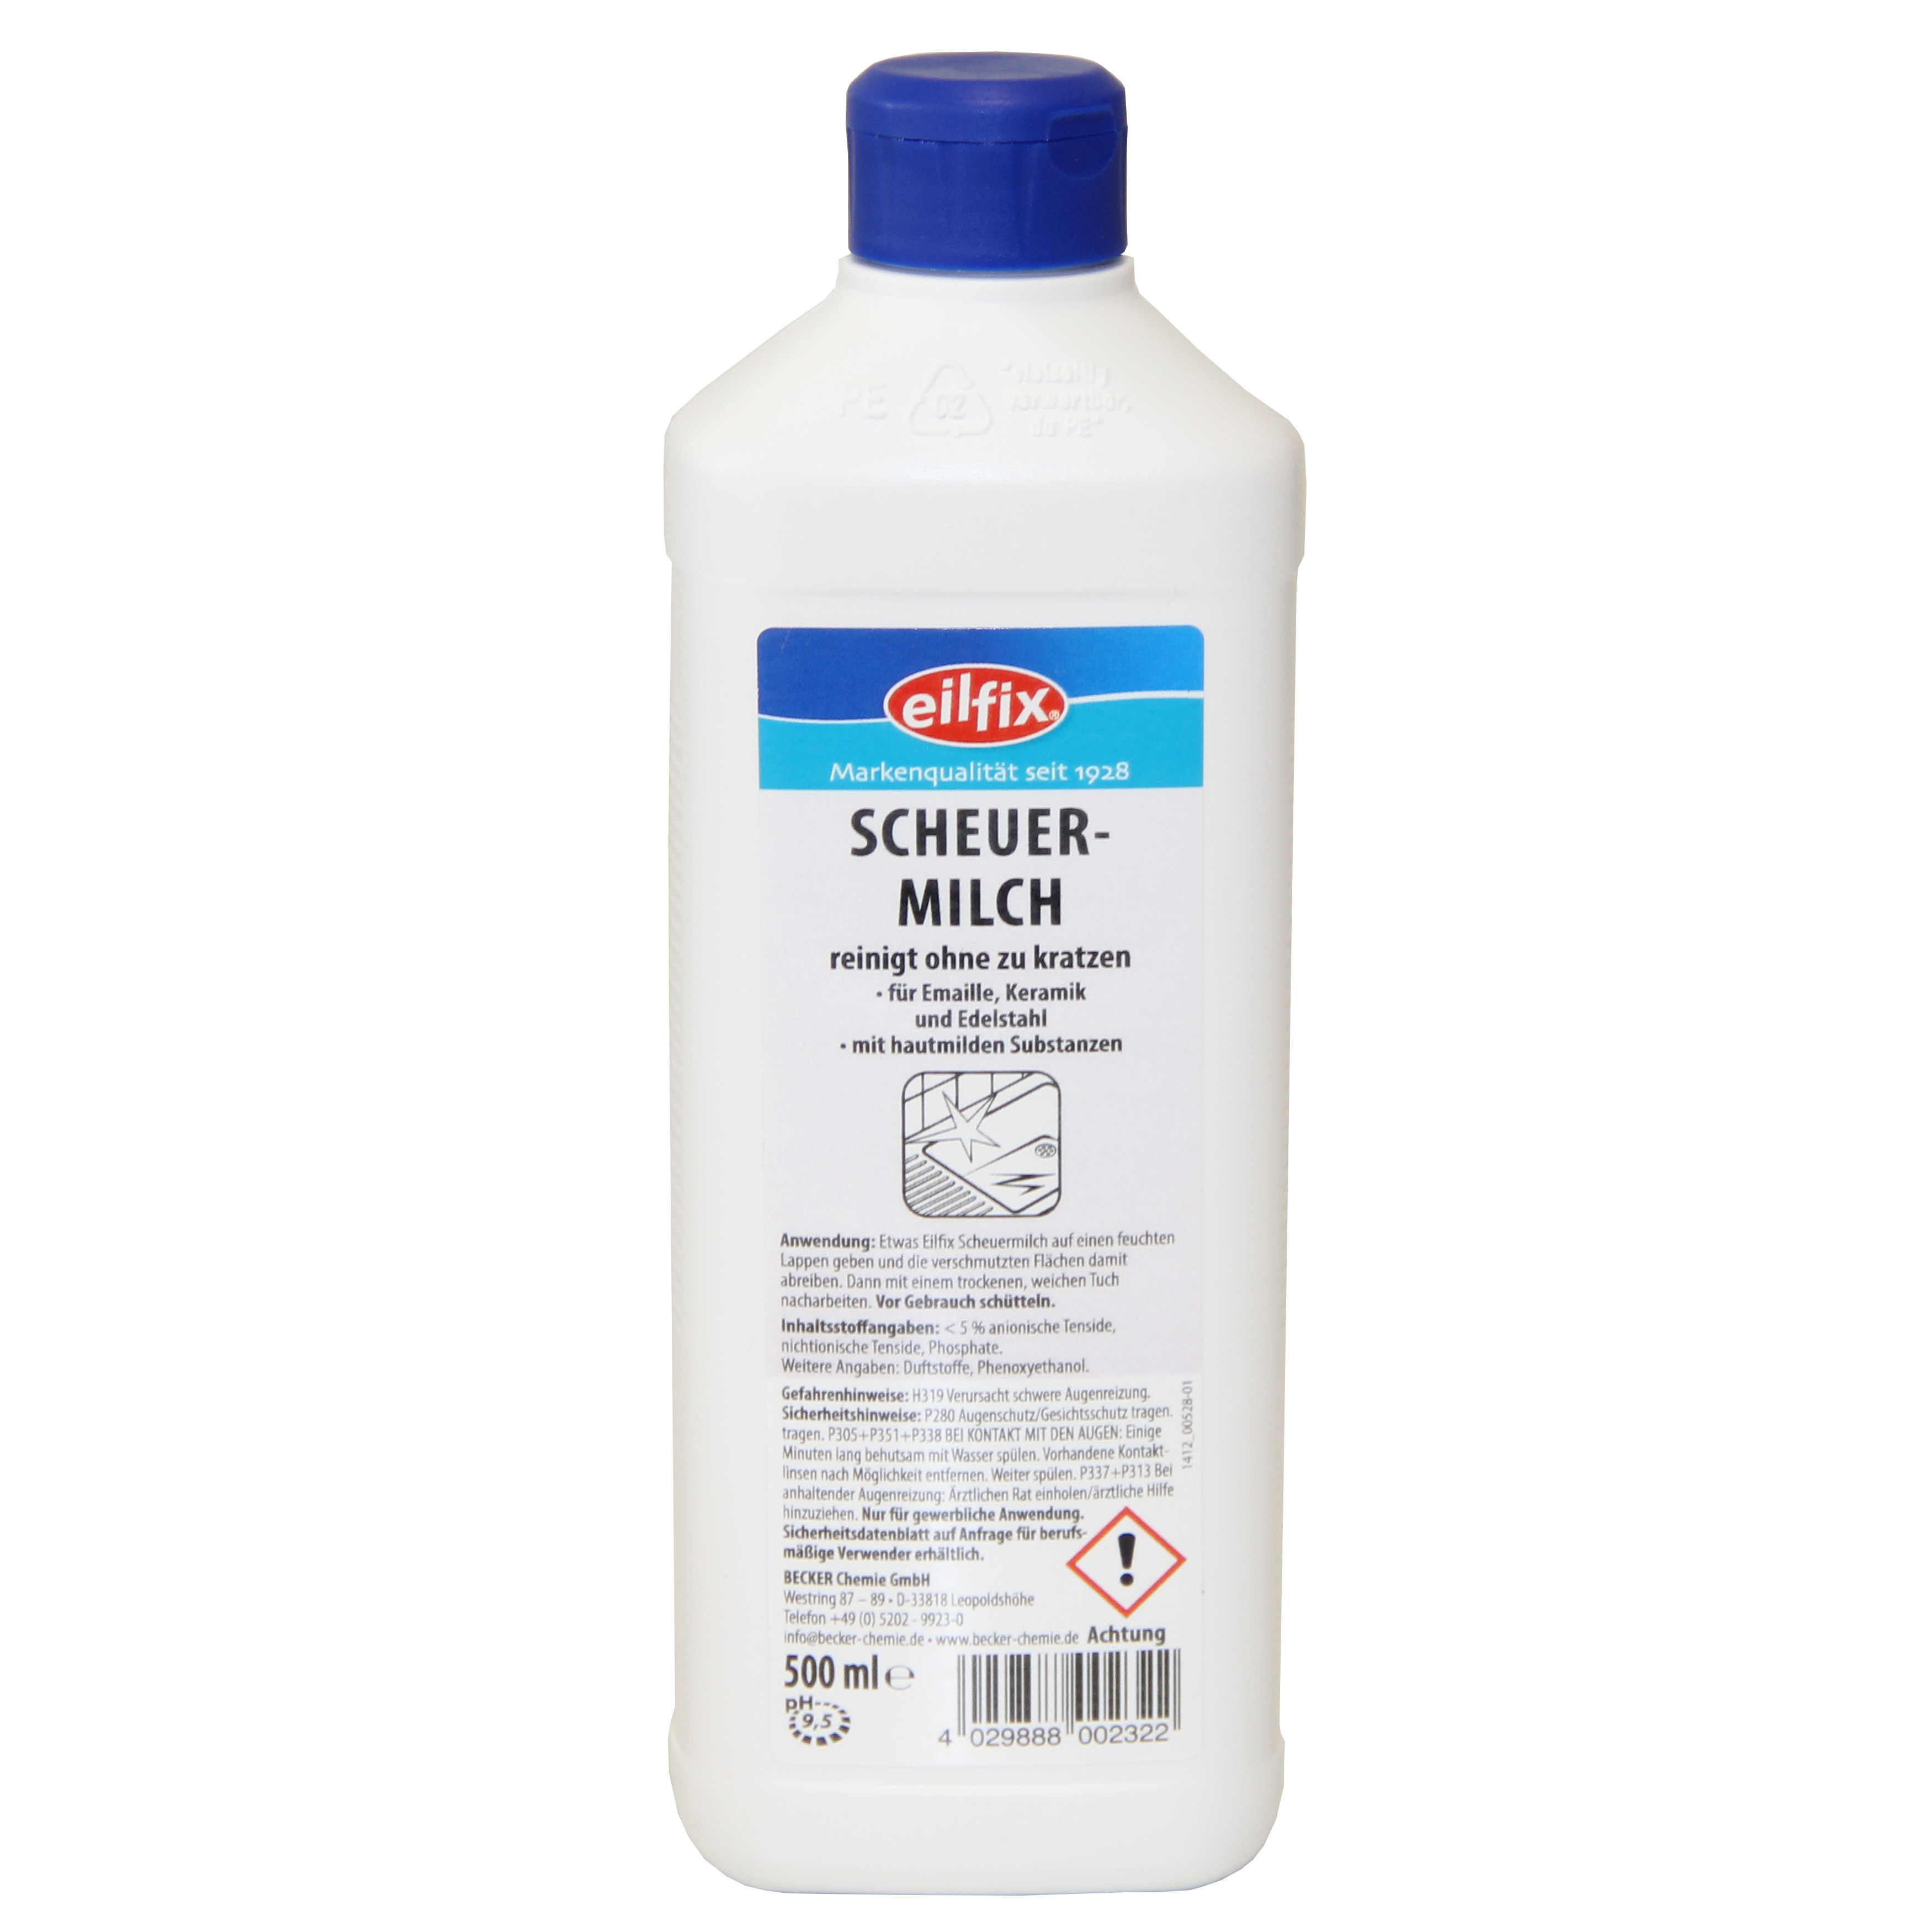 eilfix Scheuermilch, 500 ml